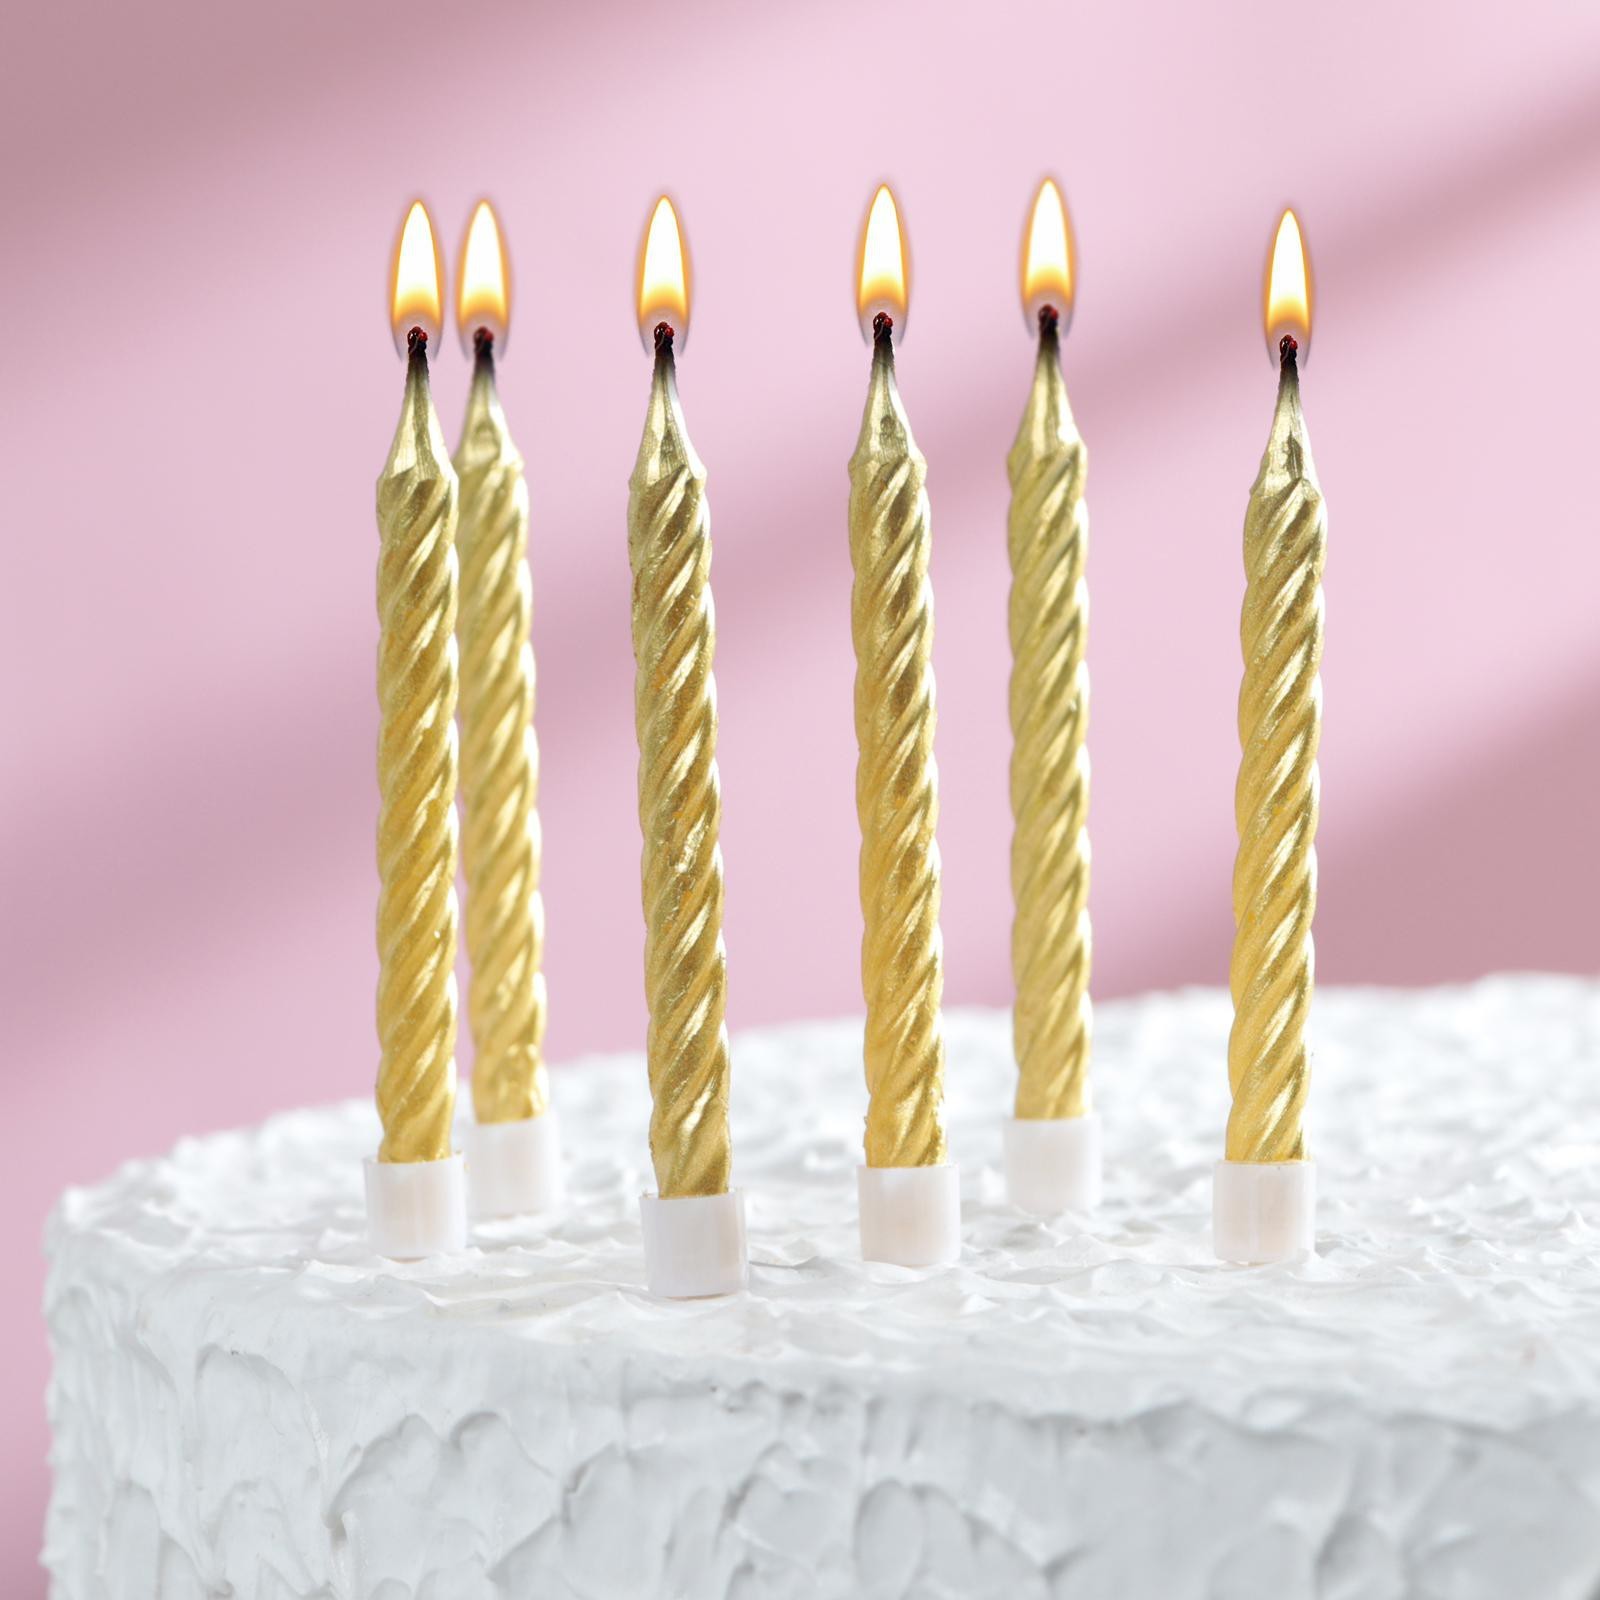 Свечи в торт 1670293 с подставками золотые набор 6 штук средние - Пенза 